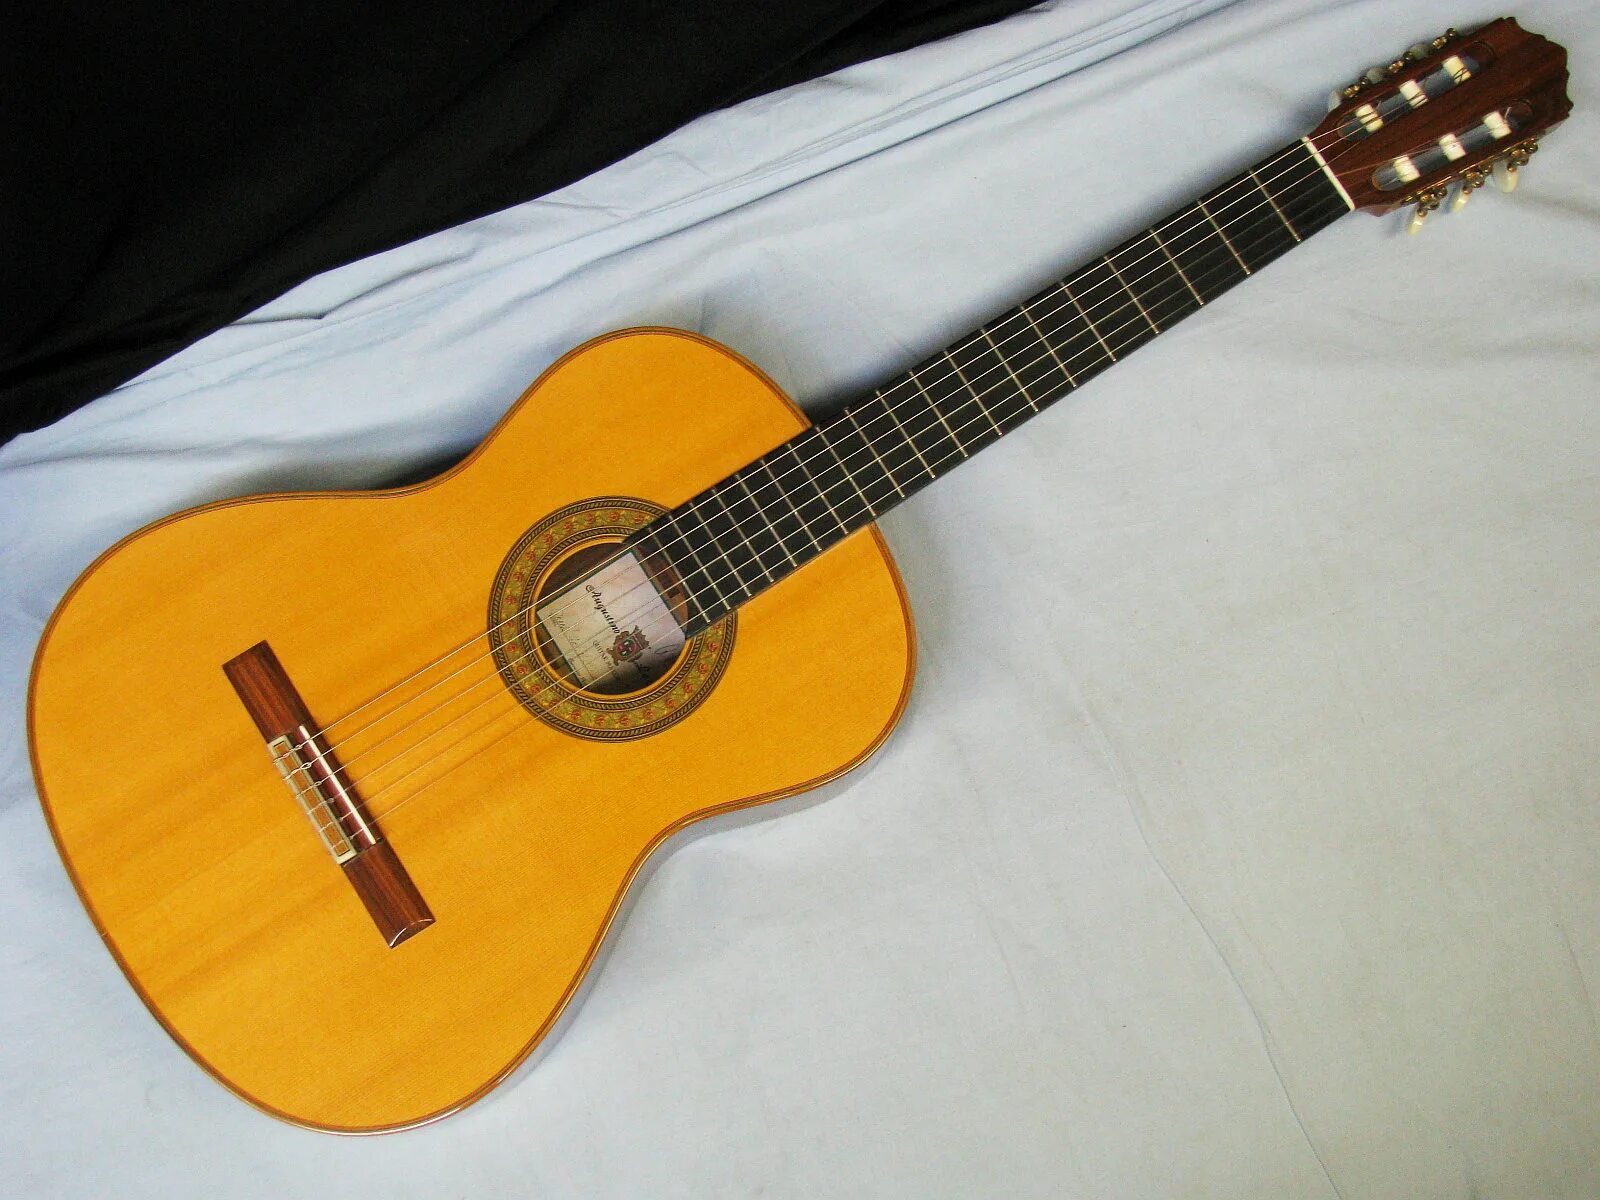 Классическая гитара Aria AK-30. Гитара Aria mm-10. Гитара акустическая 6 струнная. Гитары Августино gs102.